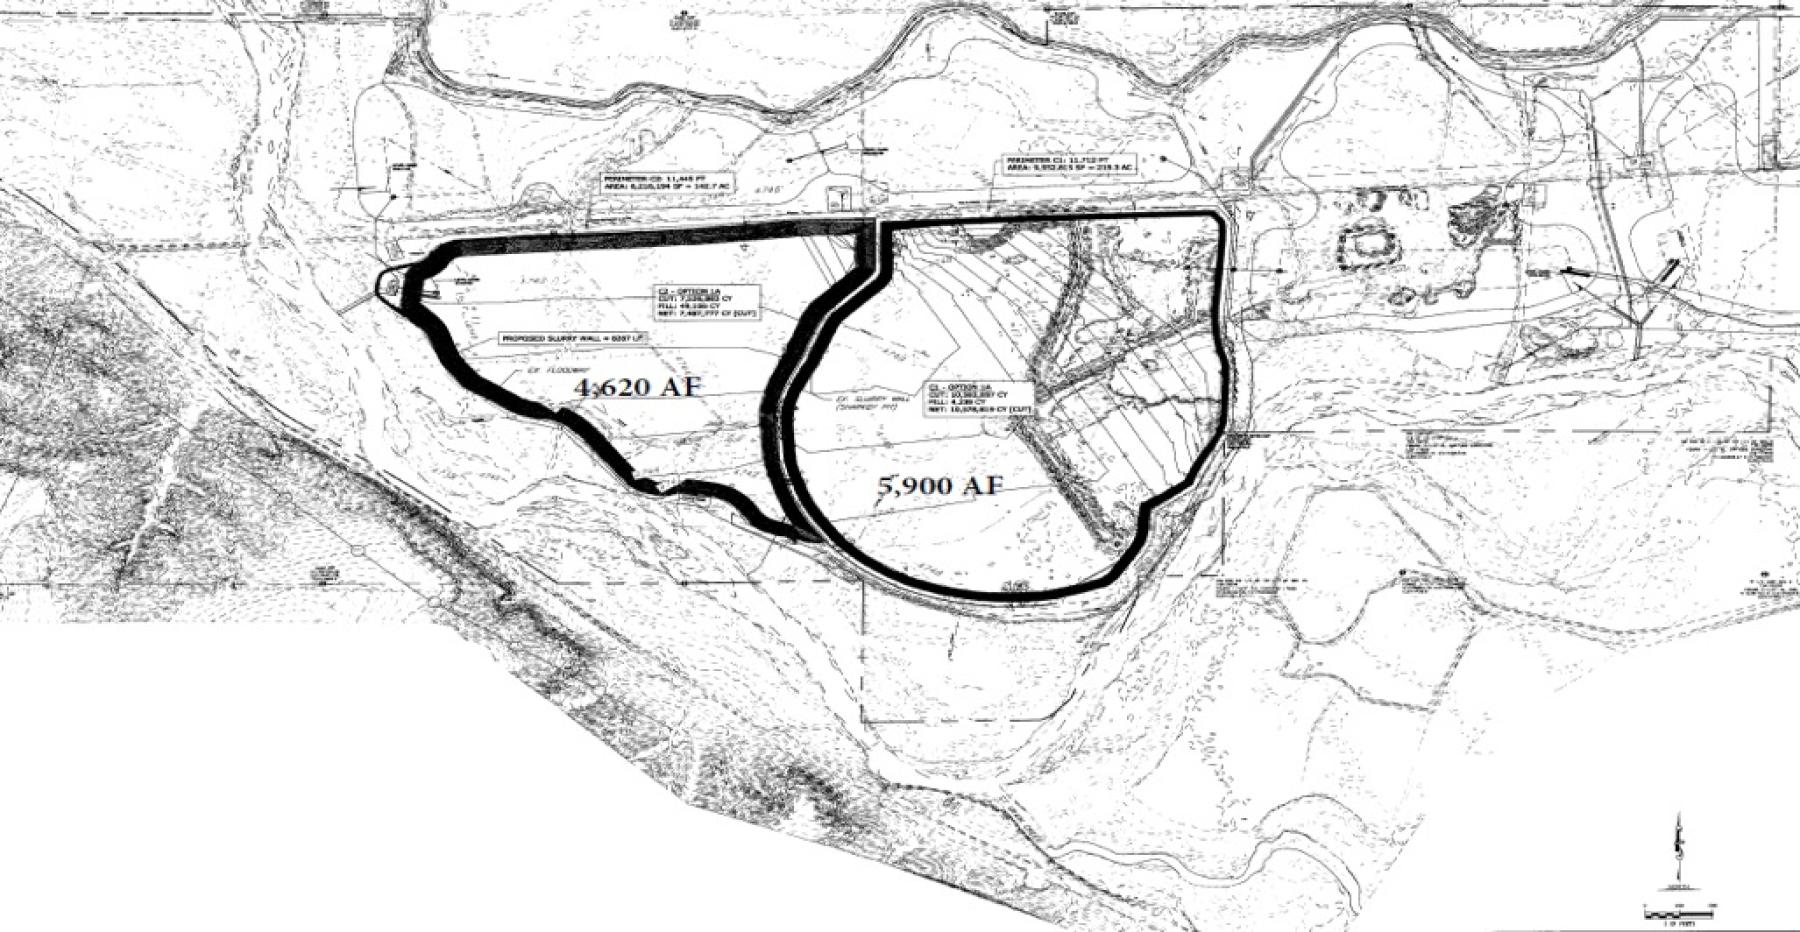 Plan Set for Milliken Reservoir